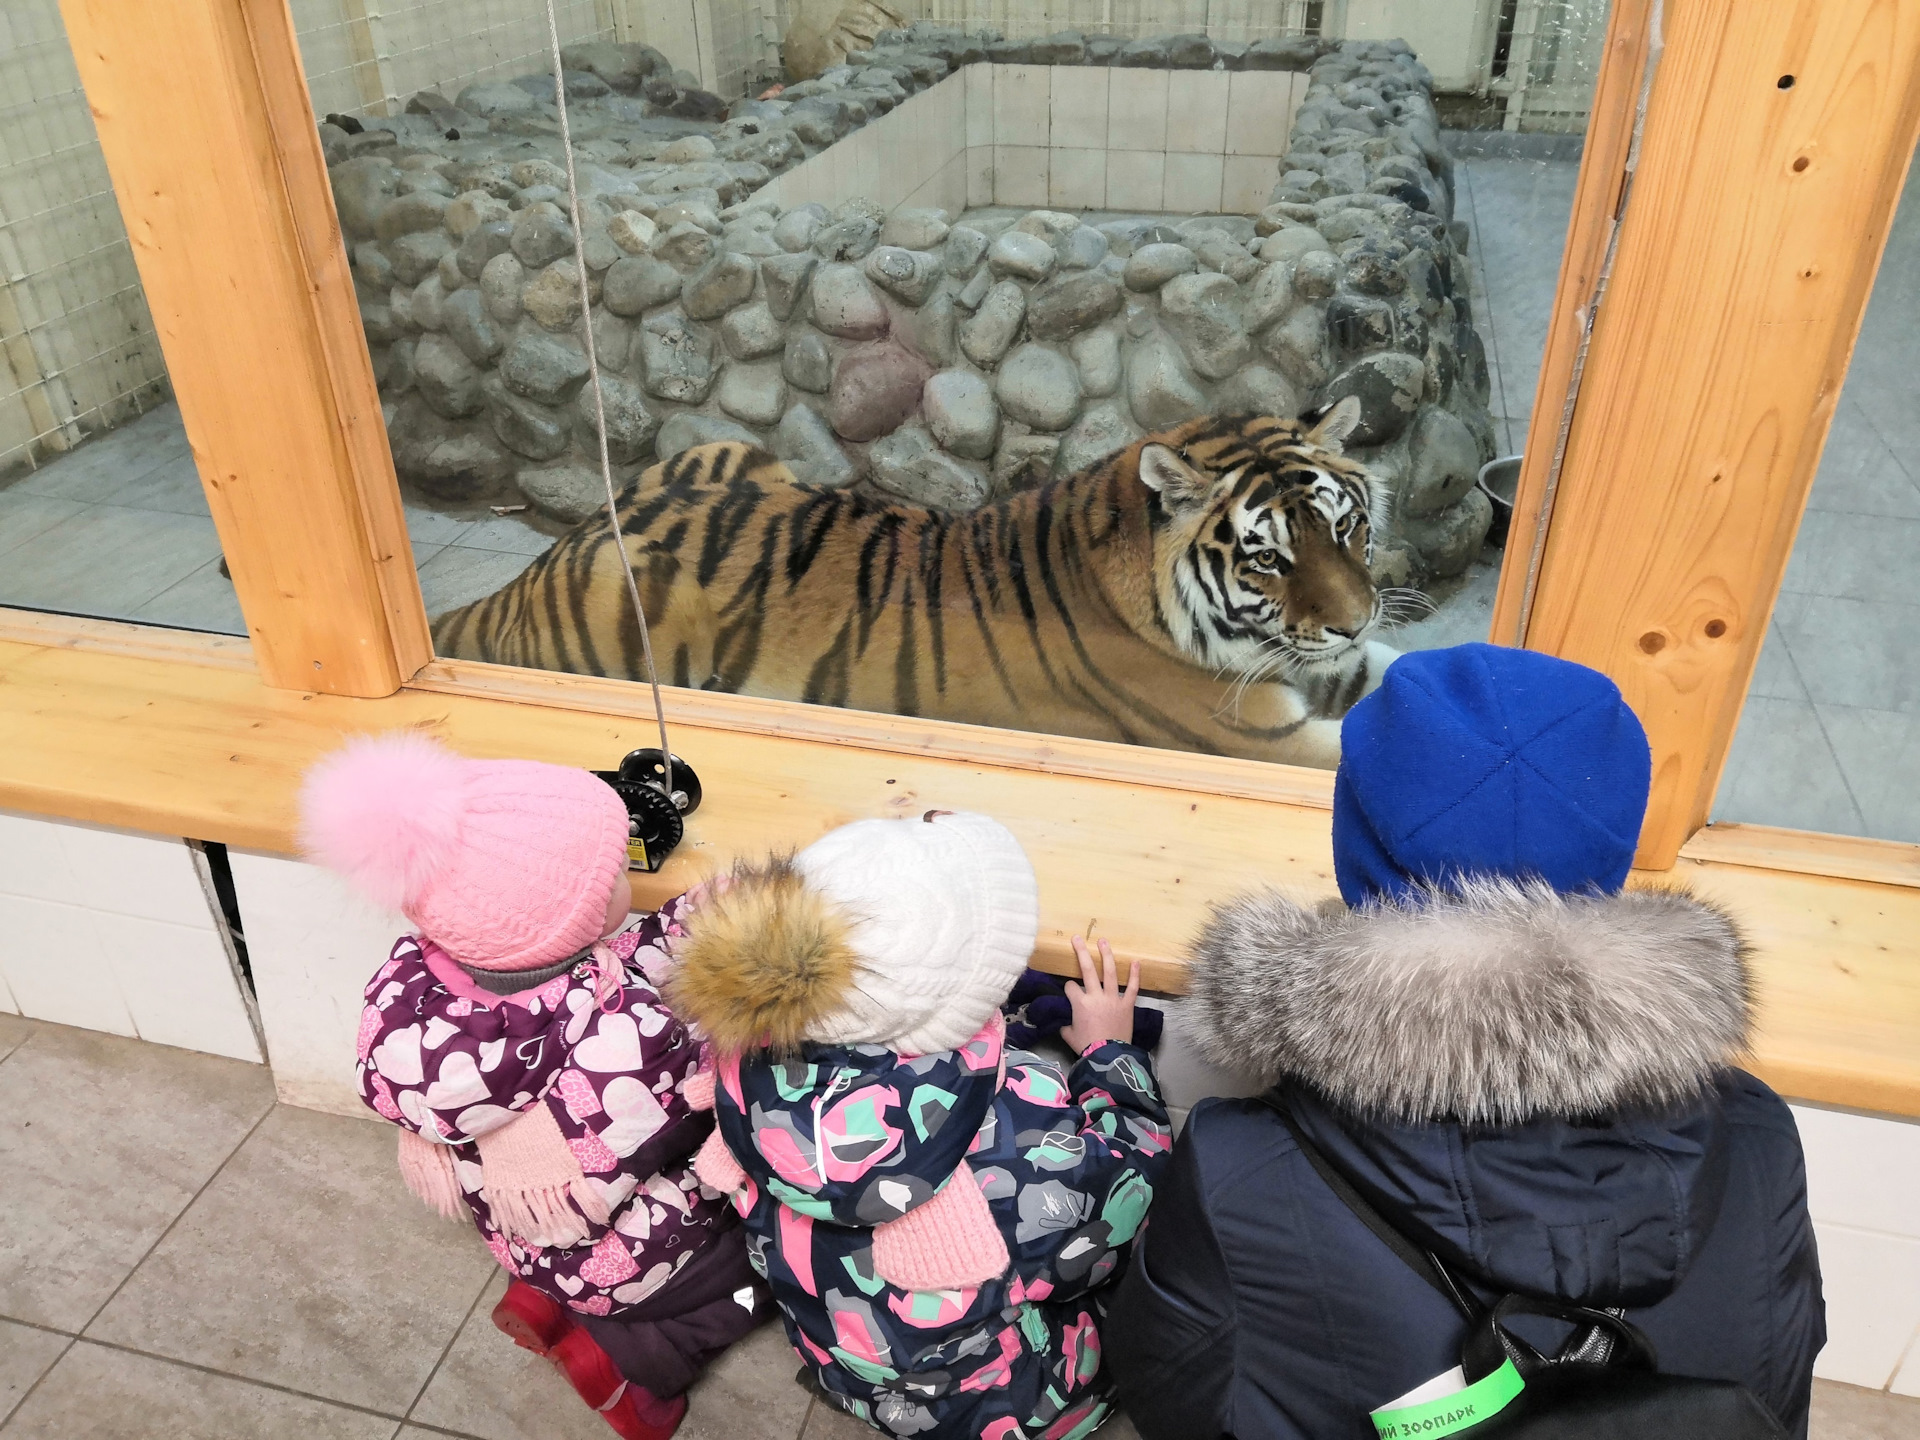 Зоопарк зимой стоит ли идти. Зоопарк Сортавала. Зоогринпарк Карелия. Зоопарк в Карелии. Поселок Киркколахти зоопарк.